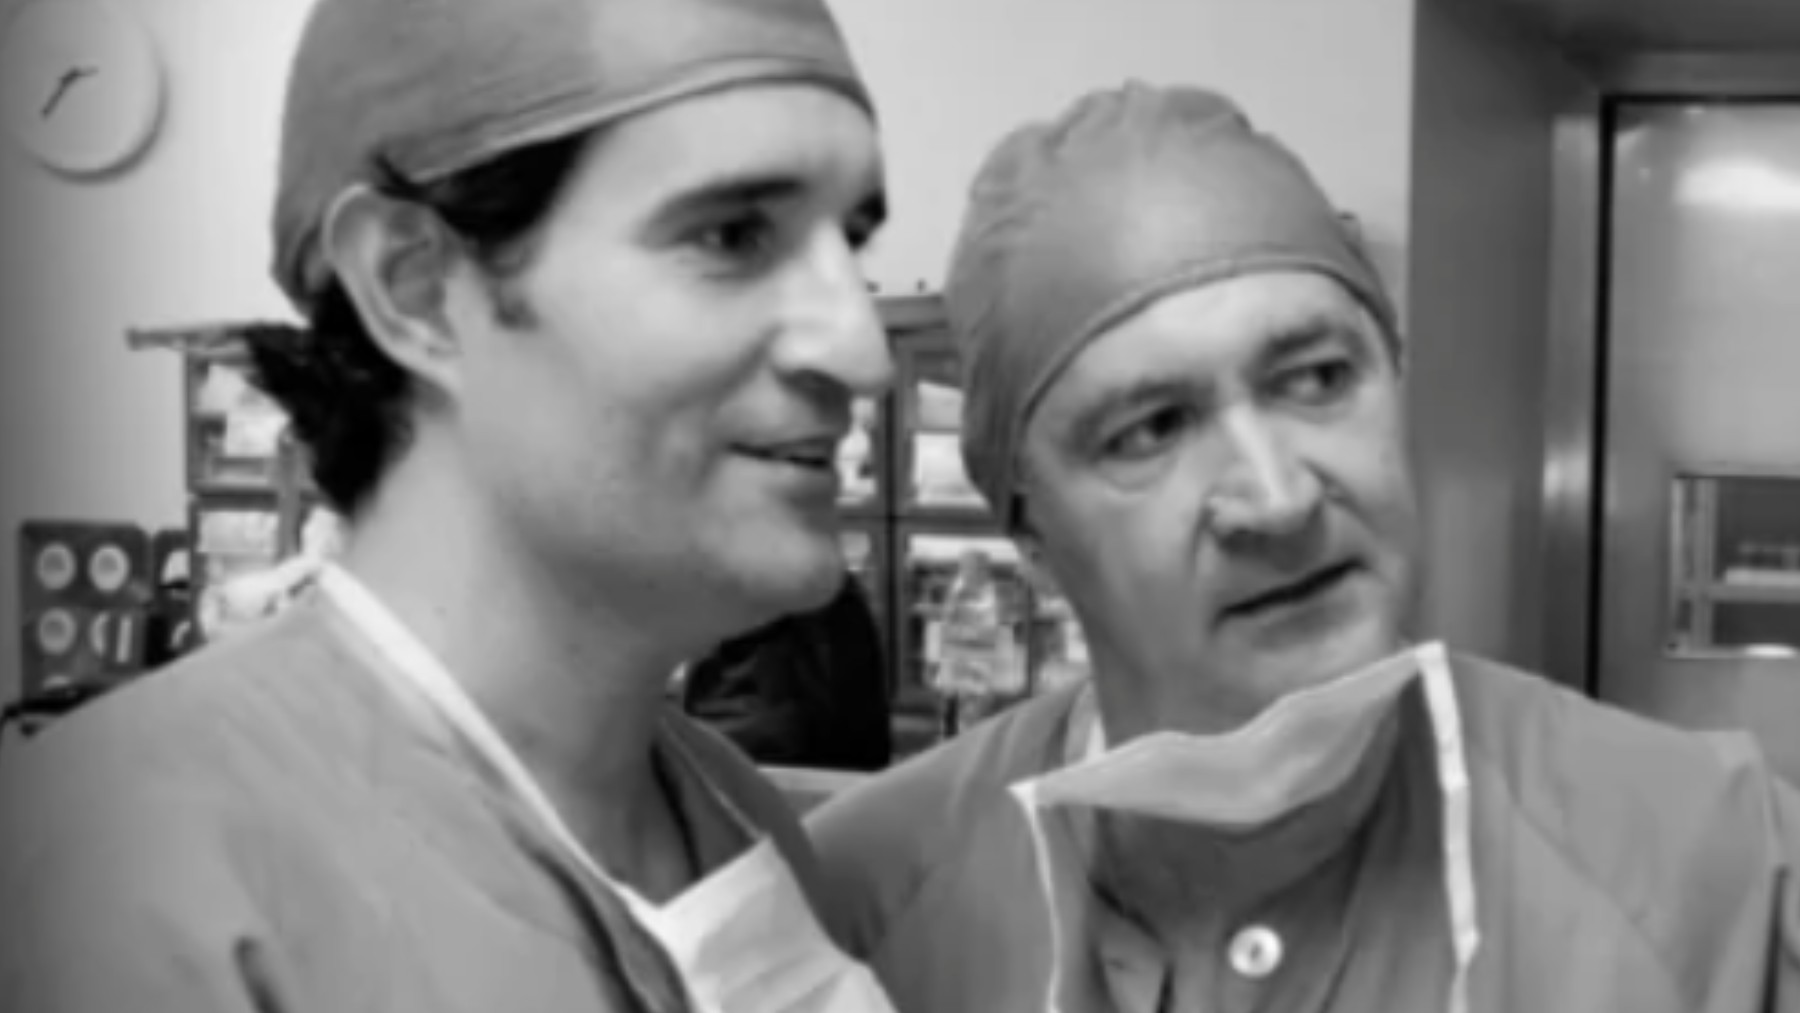 El doctor Alfredo Rodríguez Antolín, junto al doctor Romero Otero en una foto de archivo.